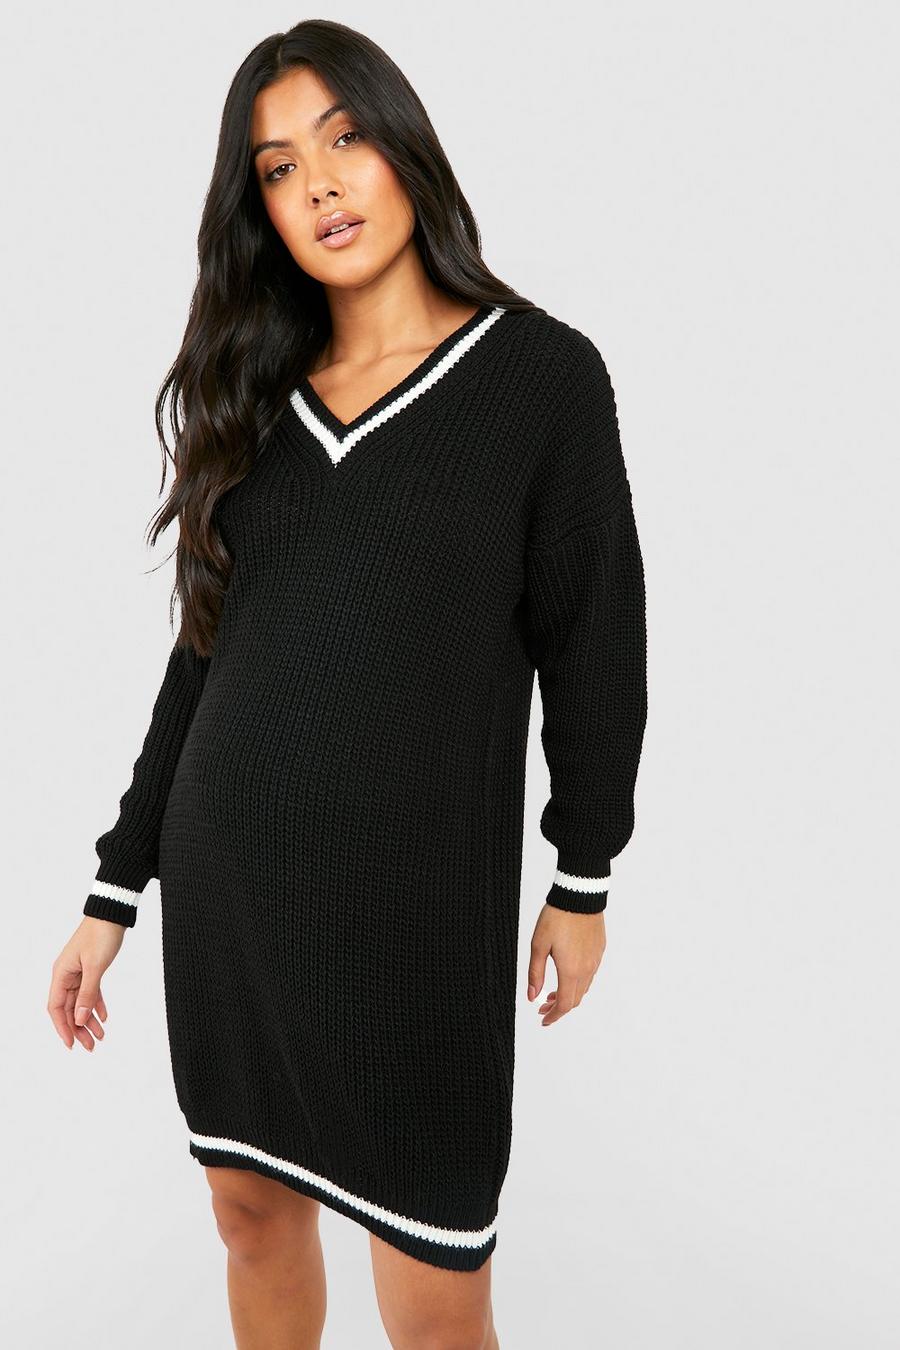 Black Maternity V Neck Knitted Sweater Dress